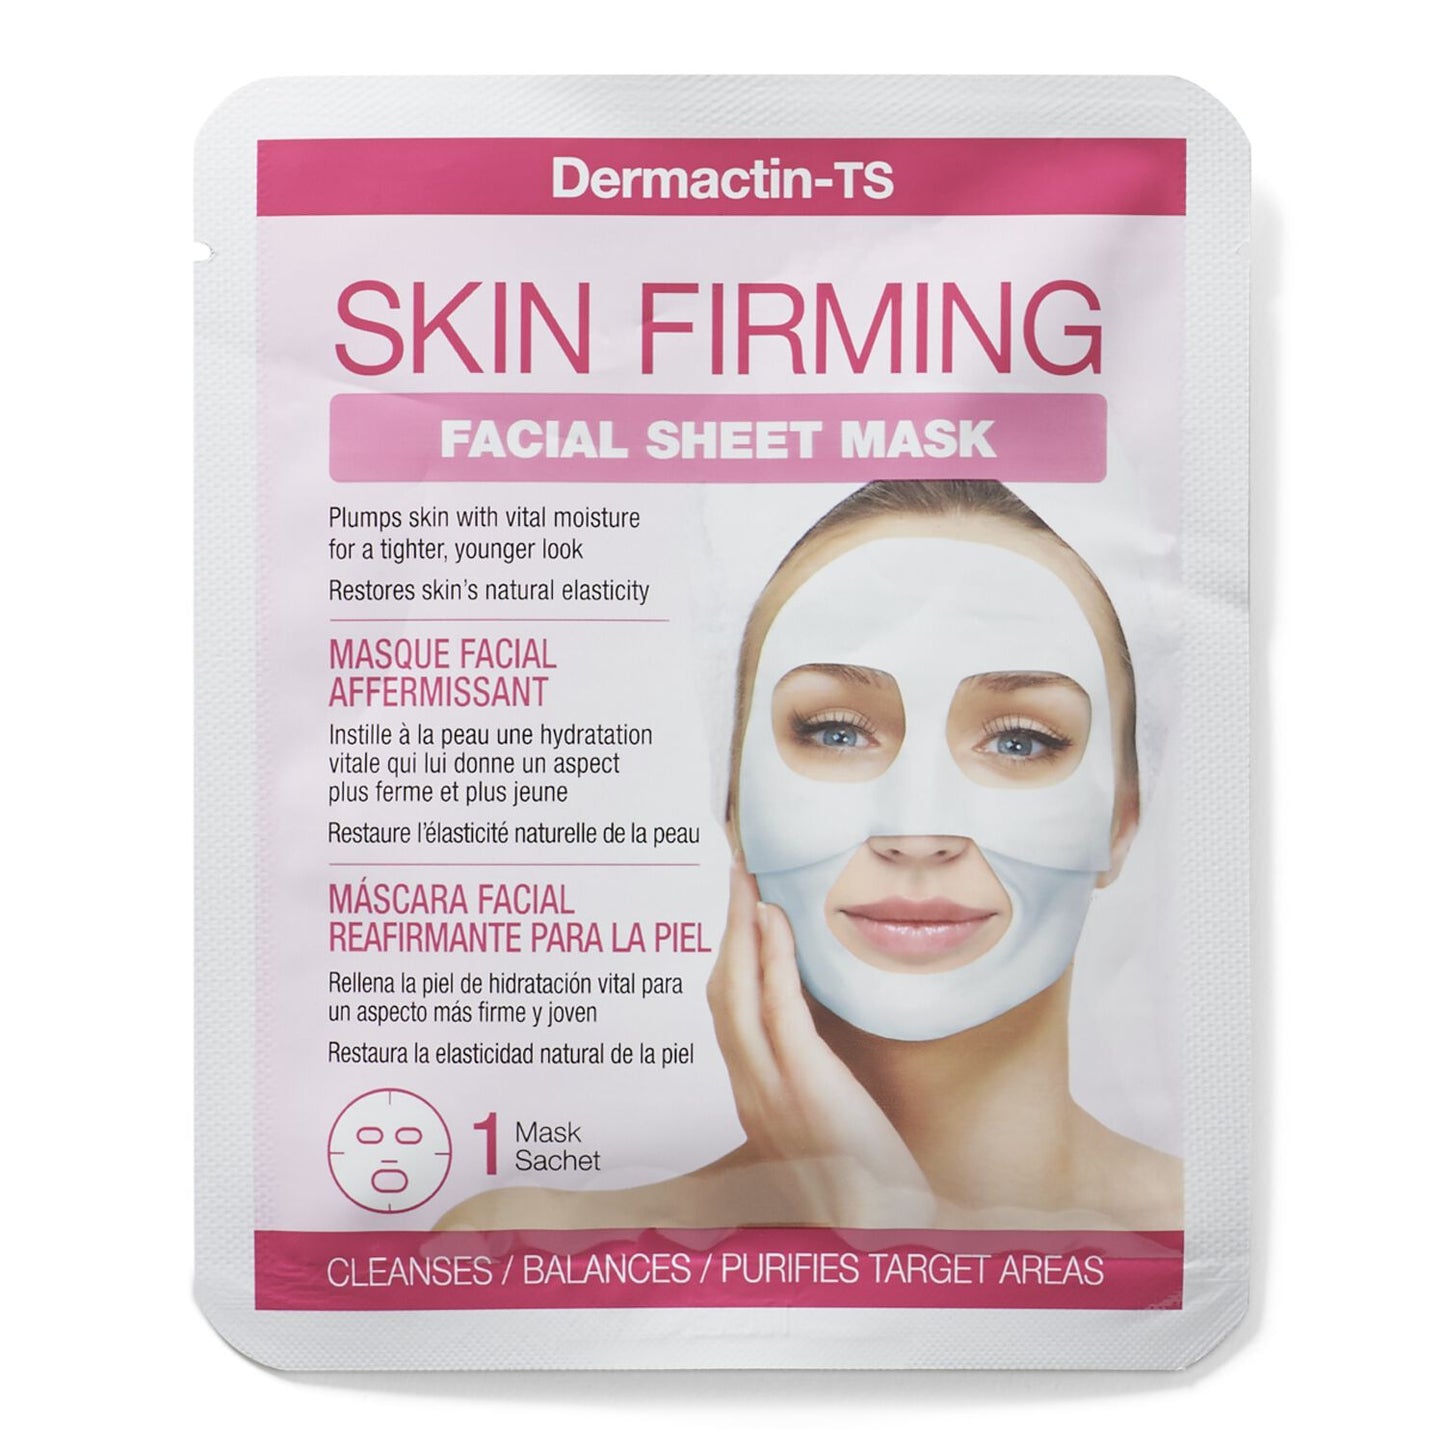 Dermactin-TS Skin Firming Facial Sheet Mask